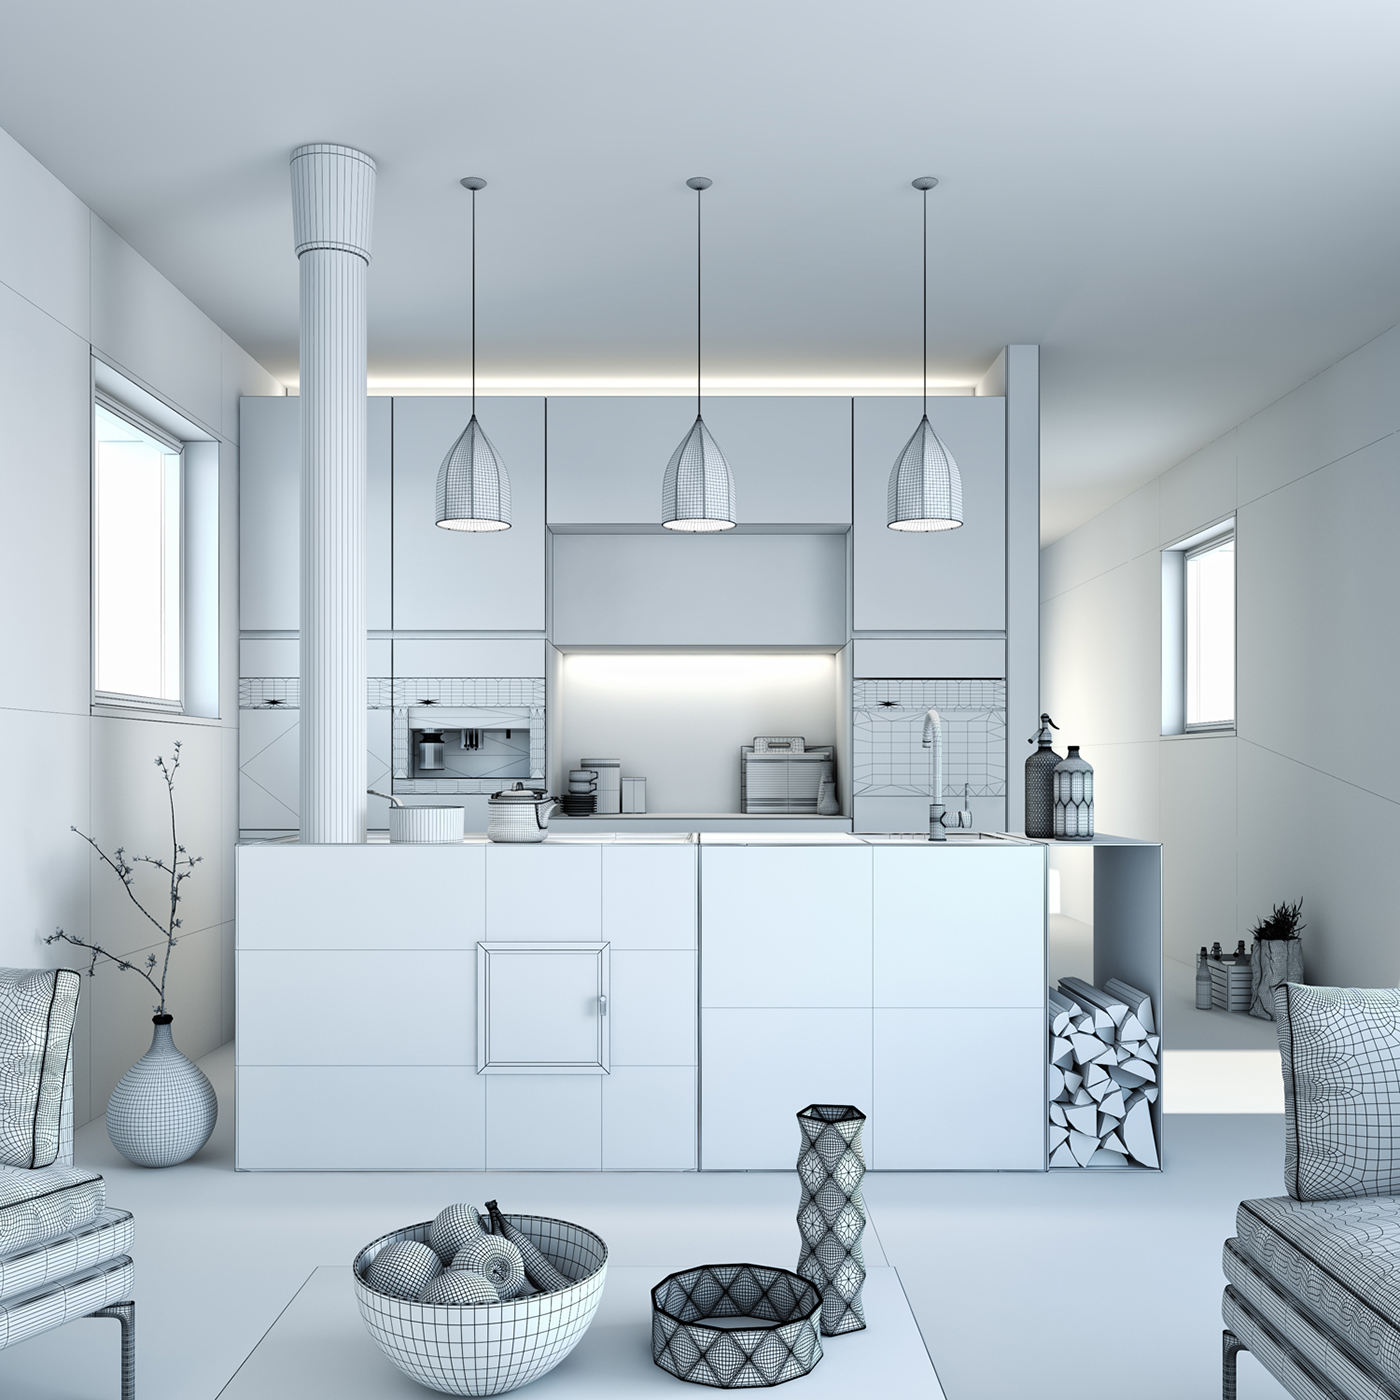 architecture Interior design miele minimalistic kitchen concrete wood